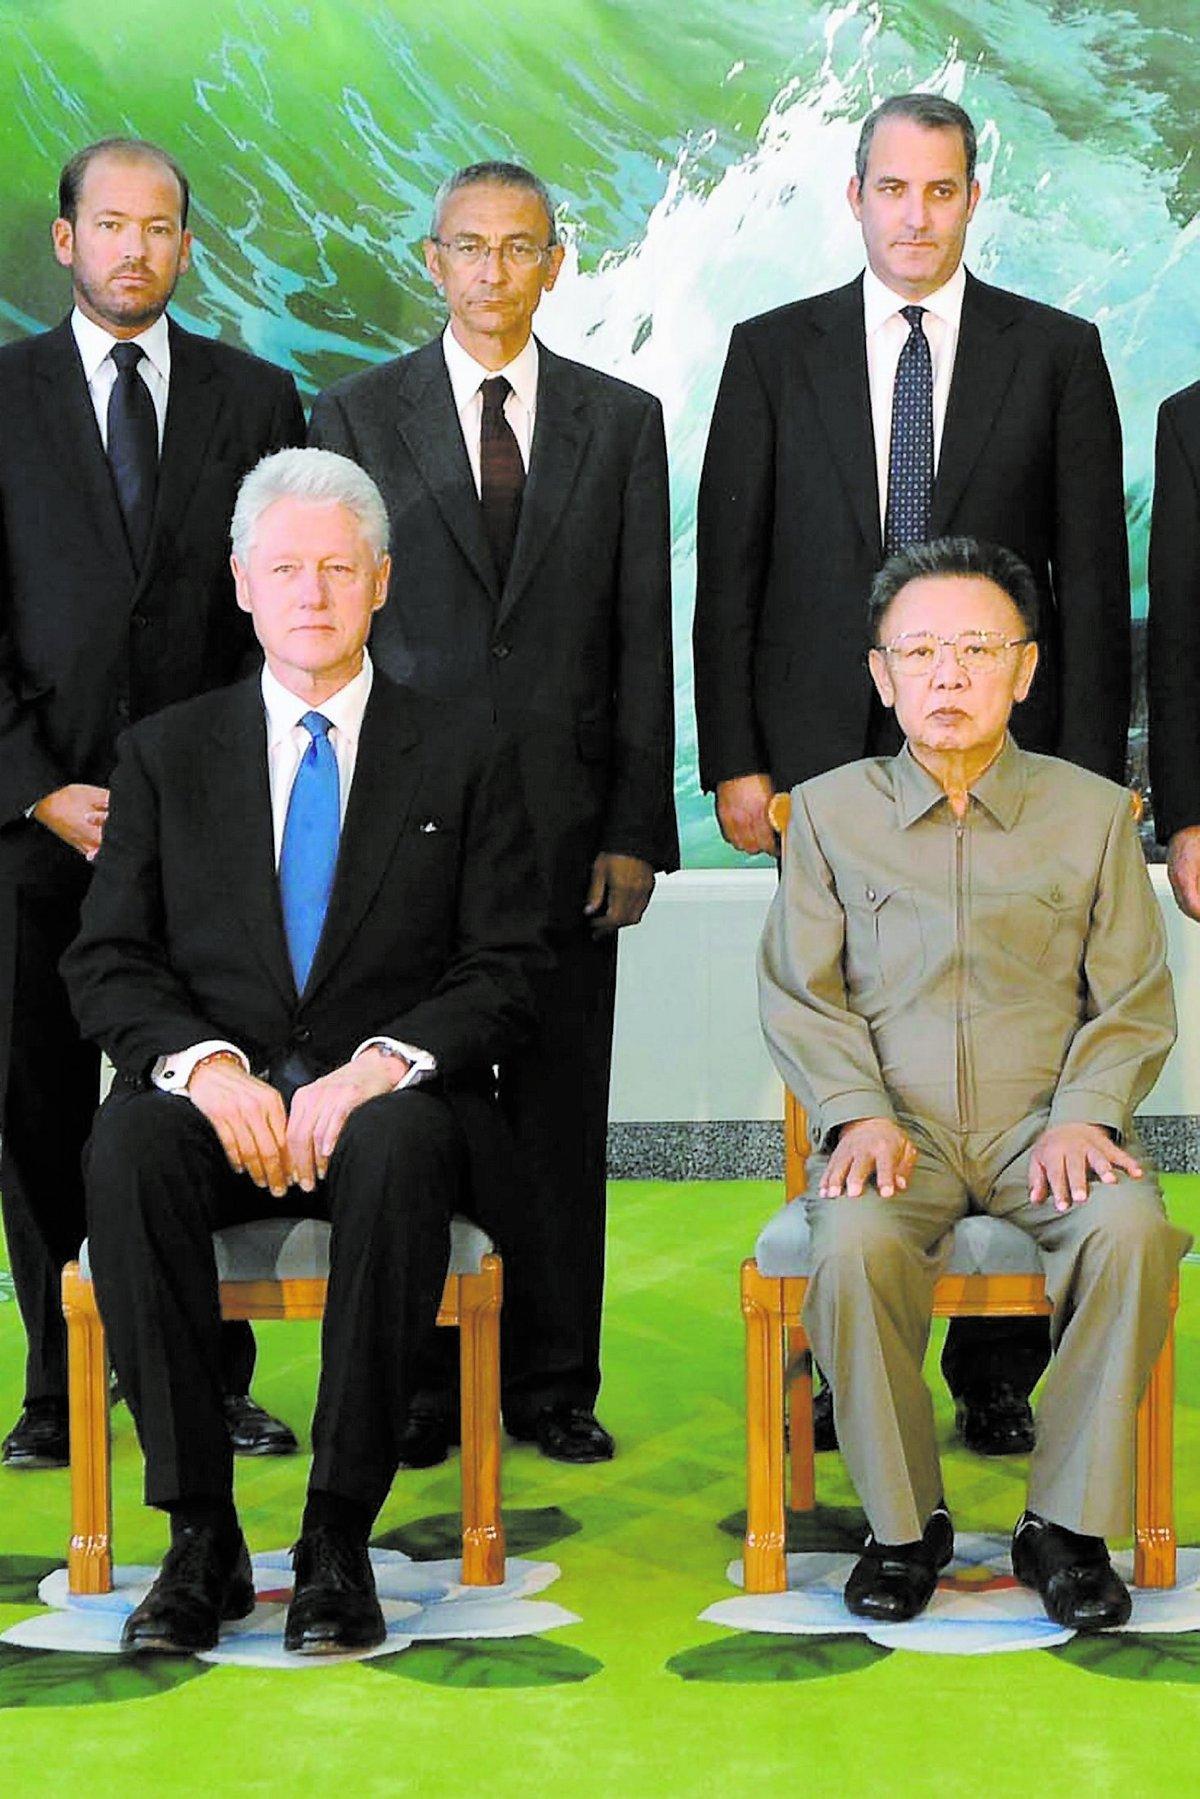 Bad om ursäkt Bill Clinton bad Kim Jong Il om ursäkt för journalisternas handlingar. Därefter var saken utagerad och Laura Ling och Euna Lee benådades.